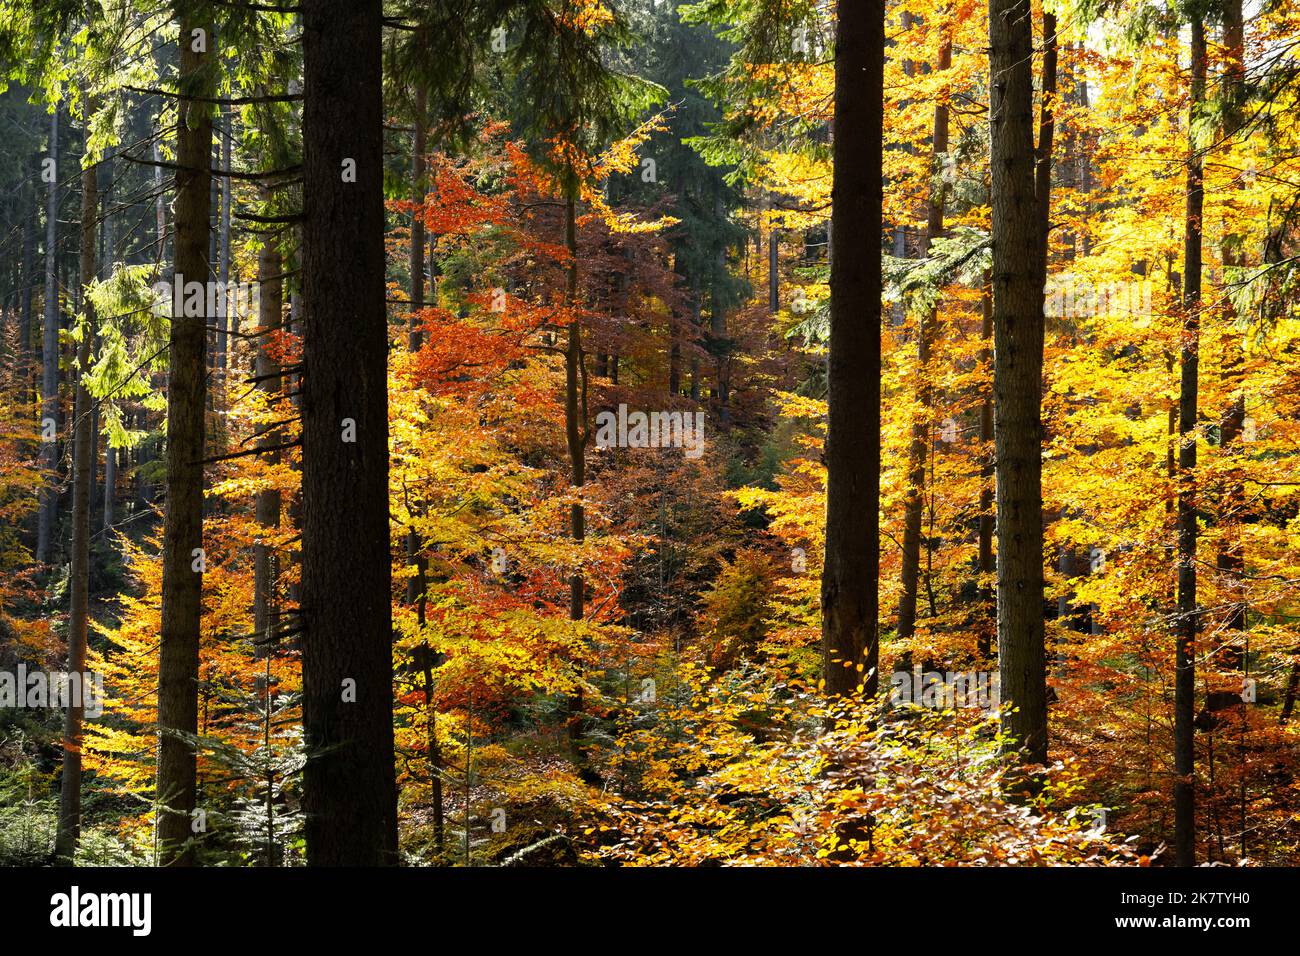 Forêt majestueuse avec des folliages jaune et orange à l'automne. Scène d'automne pittoresque dans les montagnes Carpathian, Ukraine. Photographie de paysage Banque D'Images